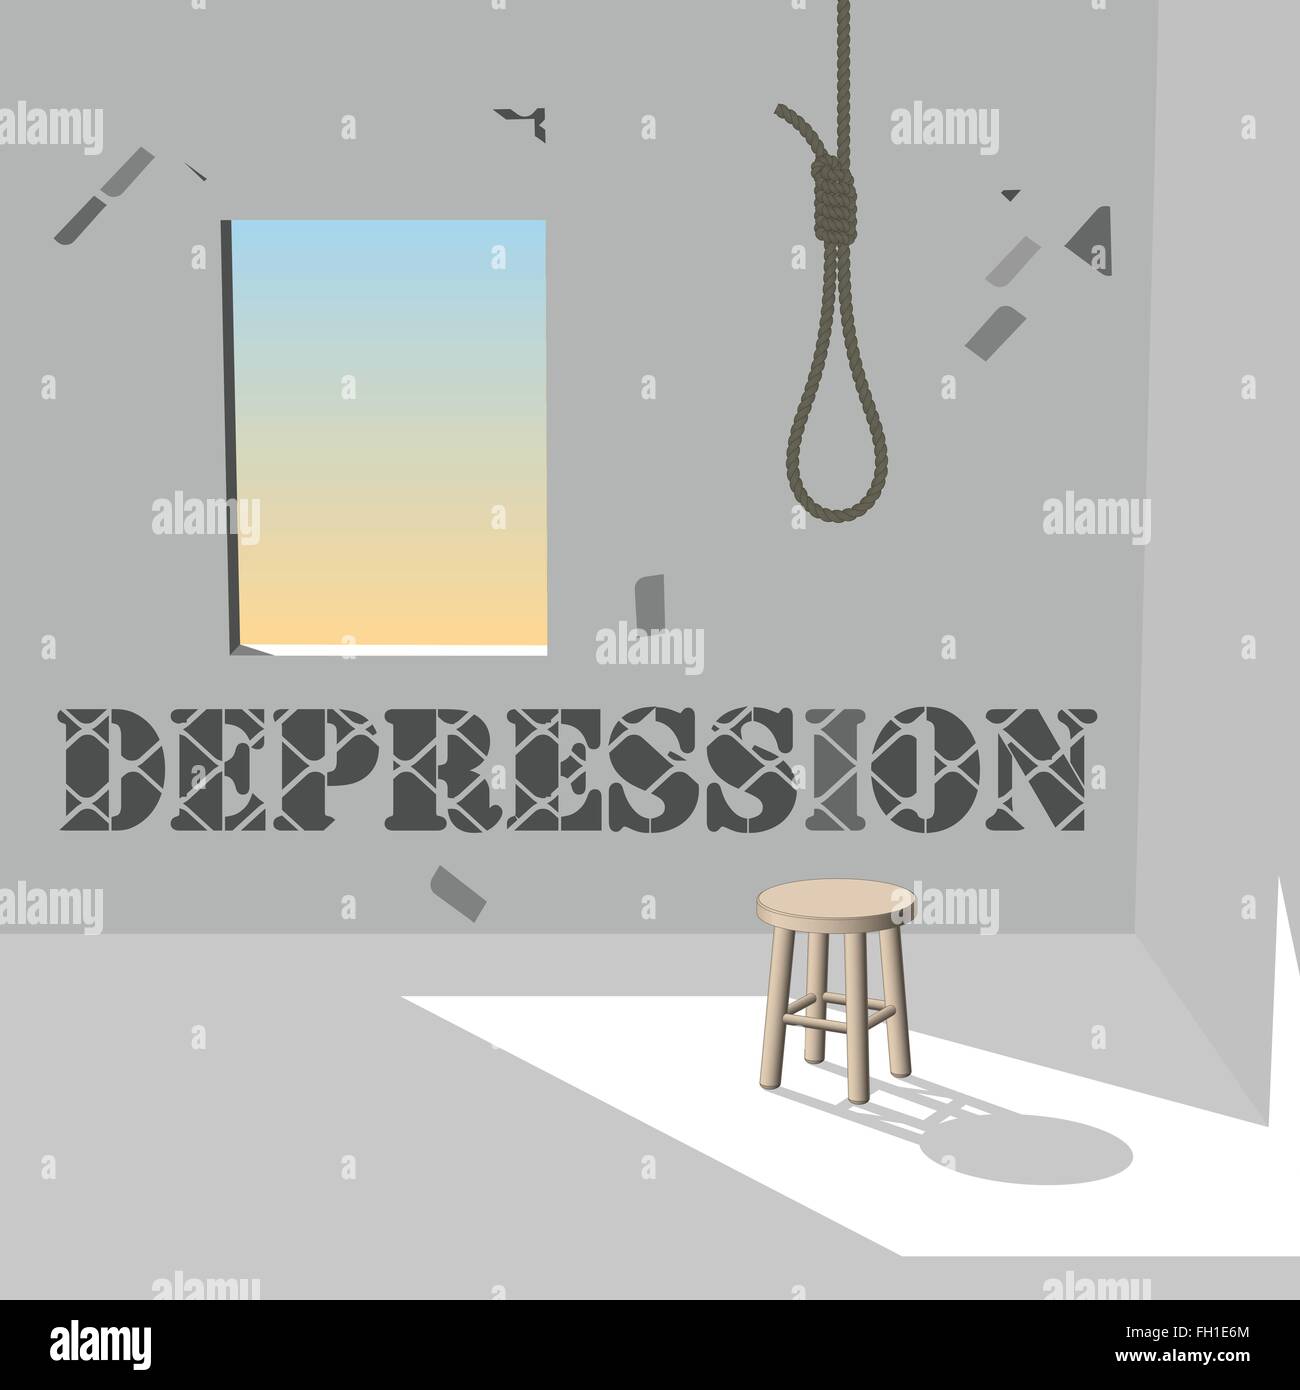 Depression in dark room Stock Vector